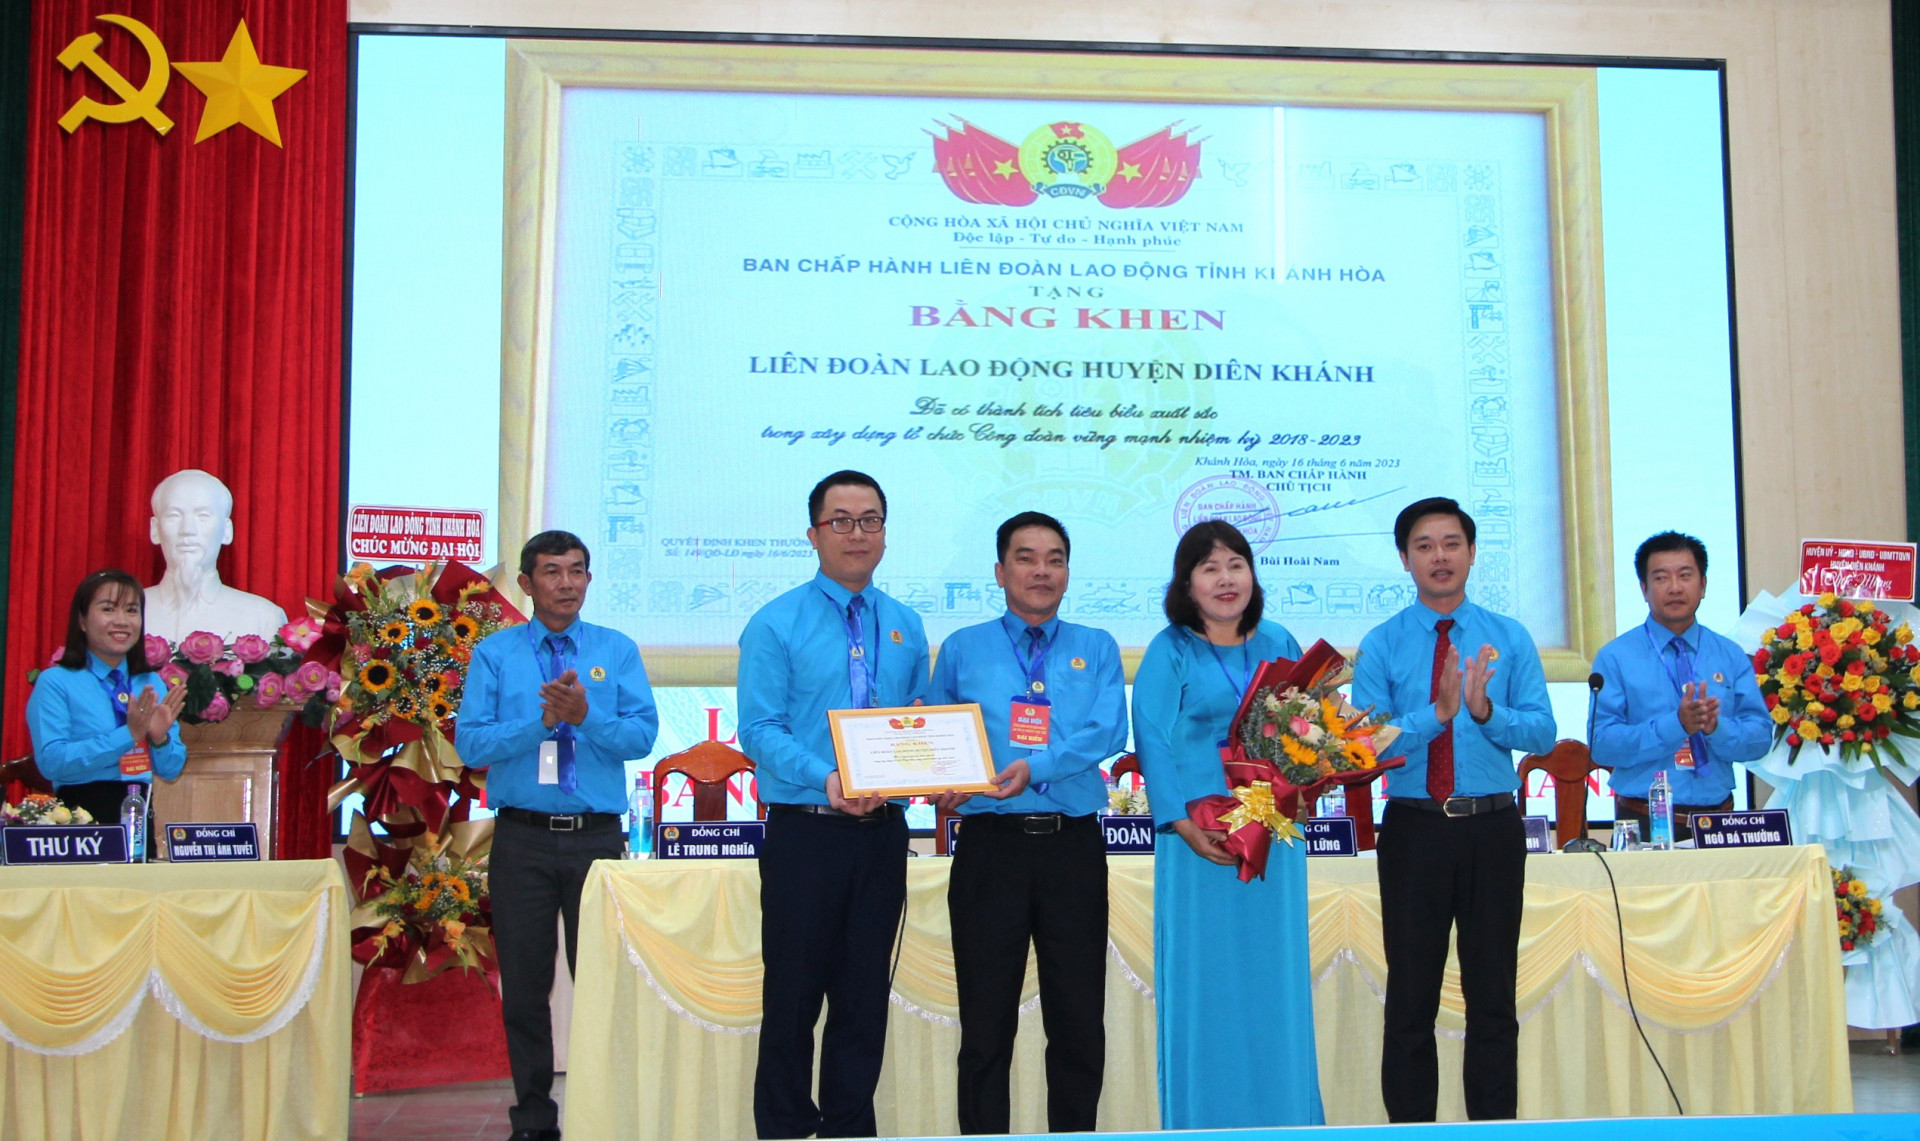 Ông Bùi Hoài Nam - Chủ tịch Liên đoàn Lao động tỉnh tặng bằng khen cho Ban Chấp hành Liên đoàn Lao động huyện Diên Khánh.